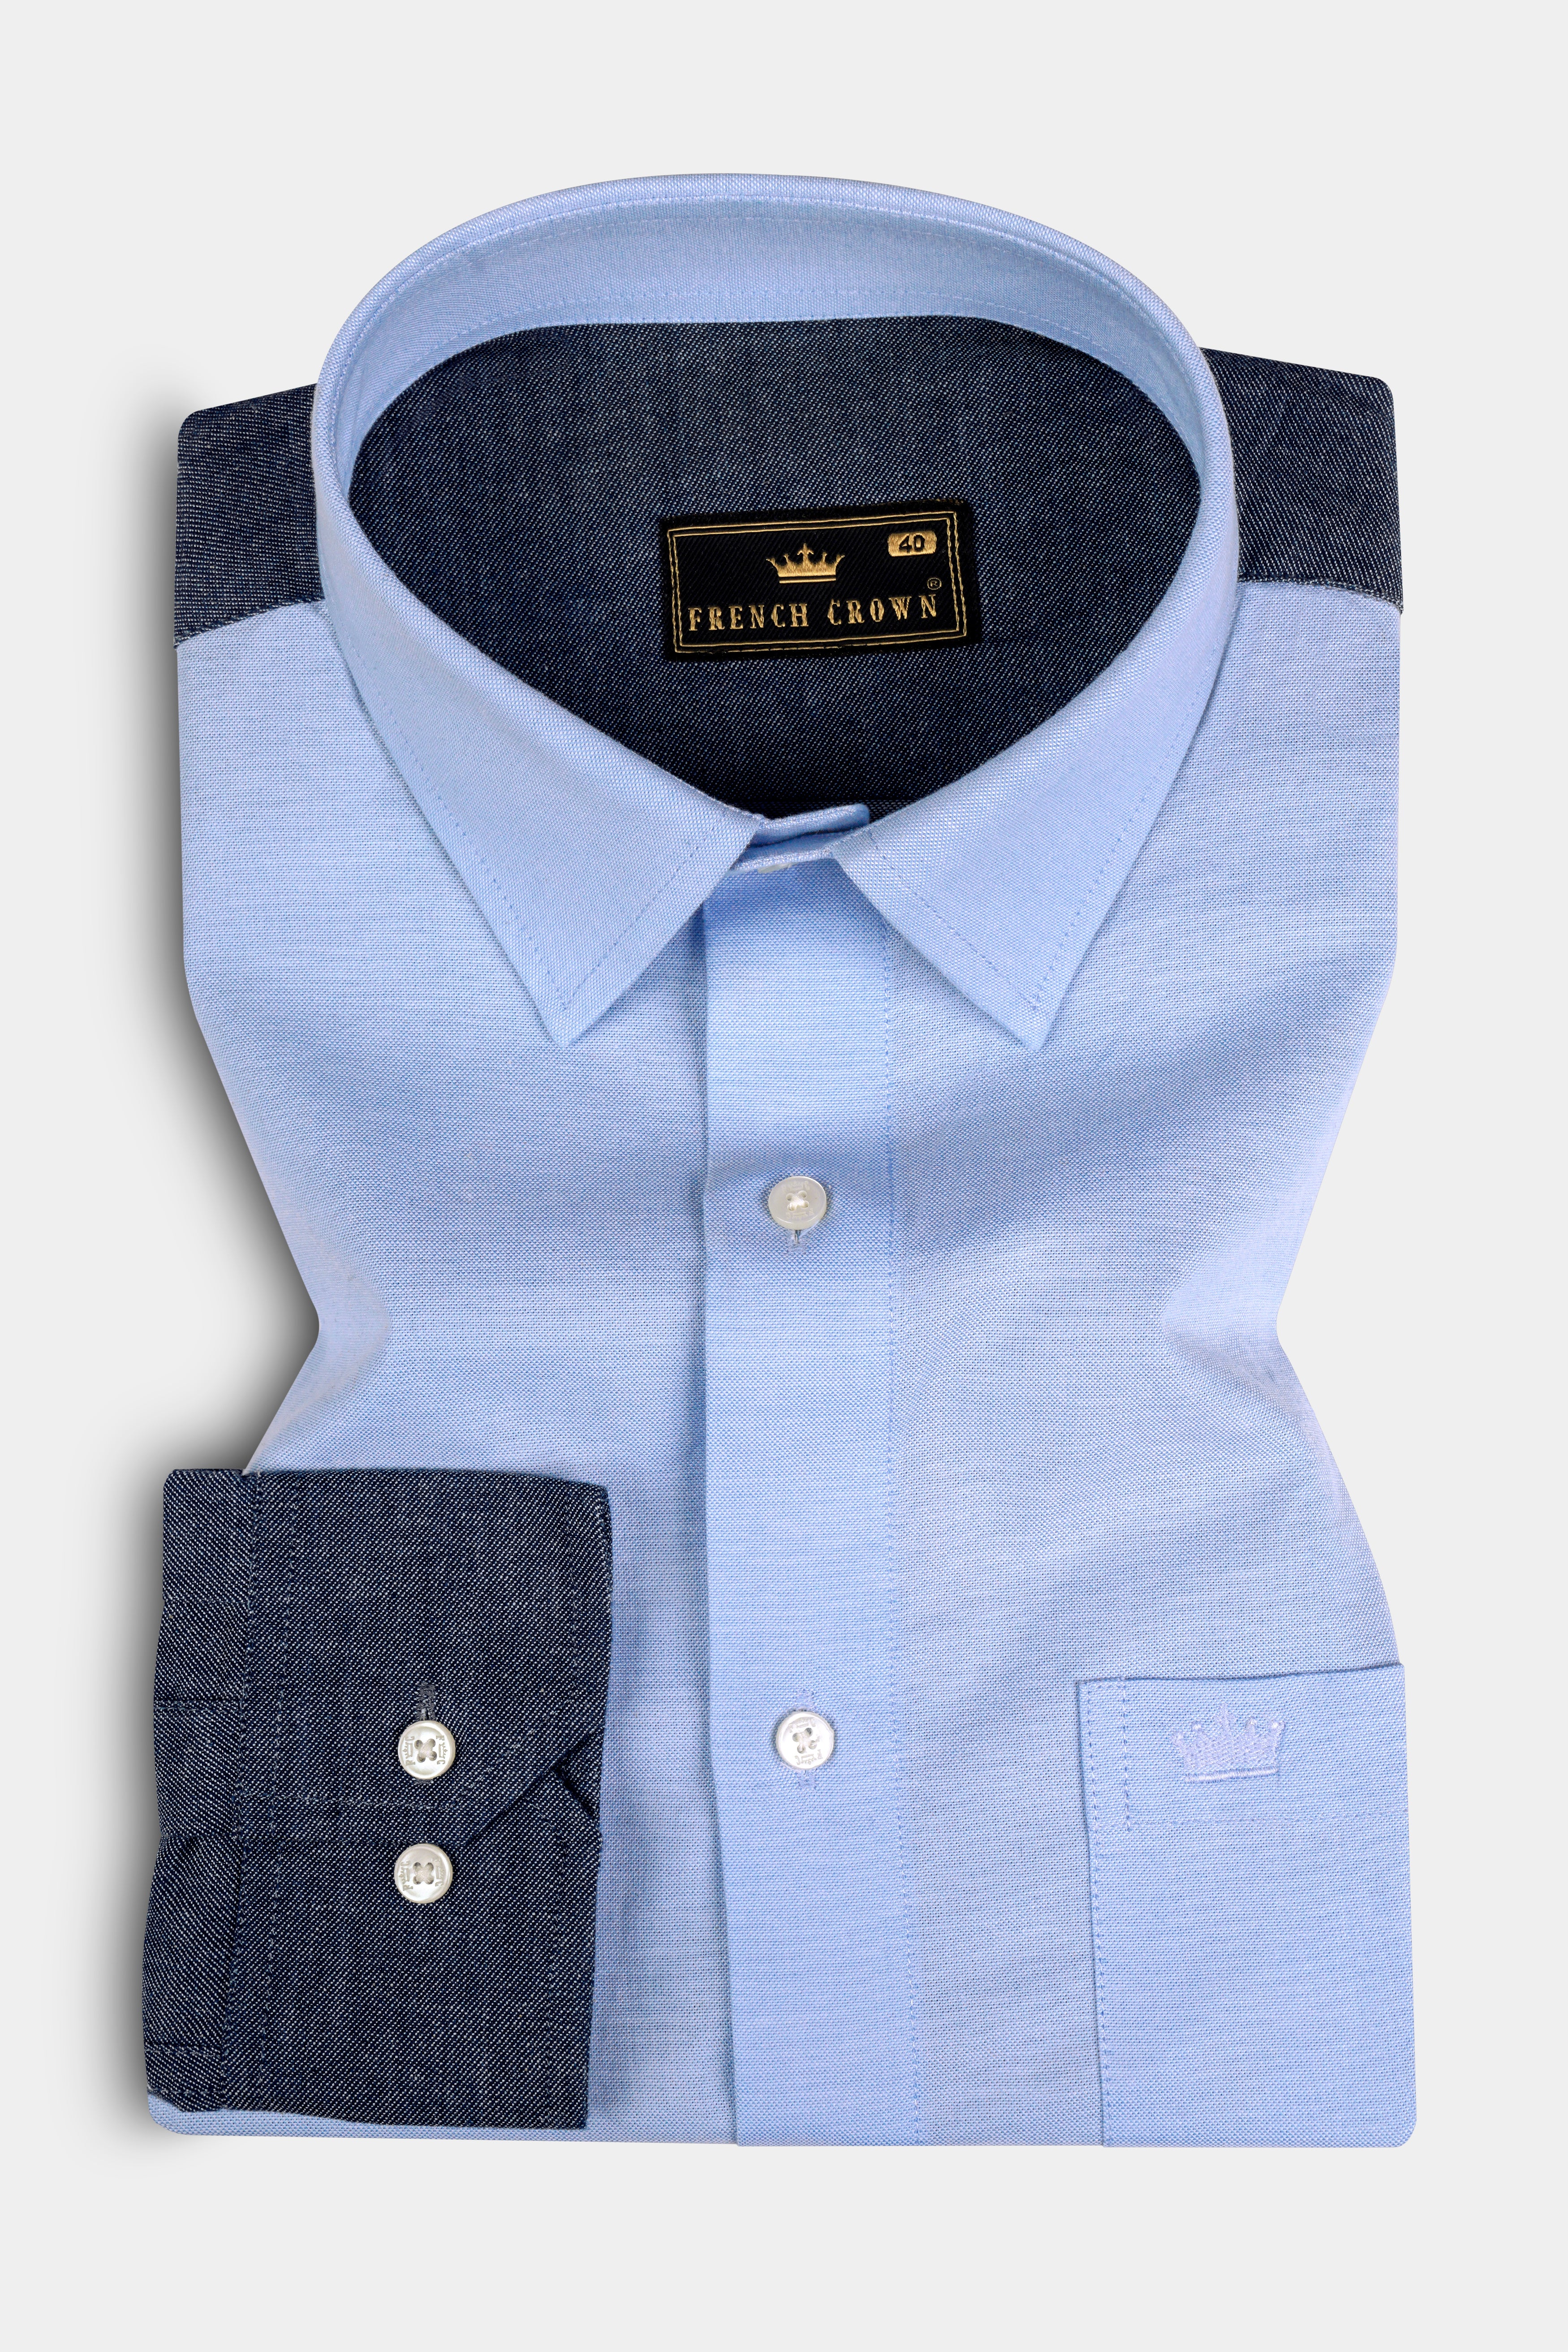 Tealish Blue and Gray Royal Oxford Shirt